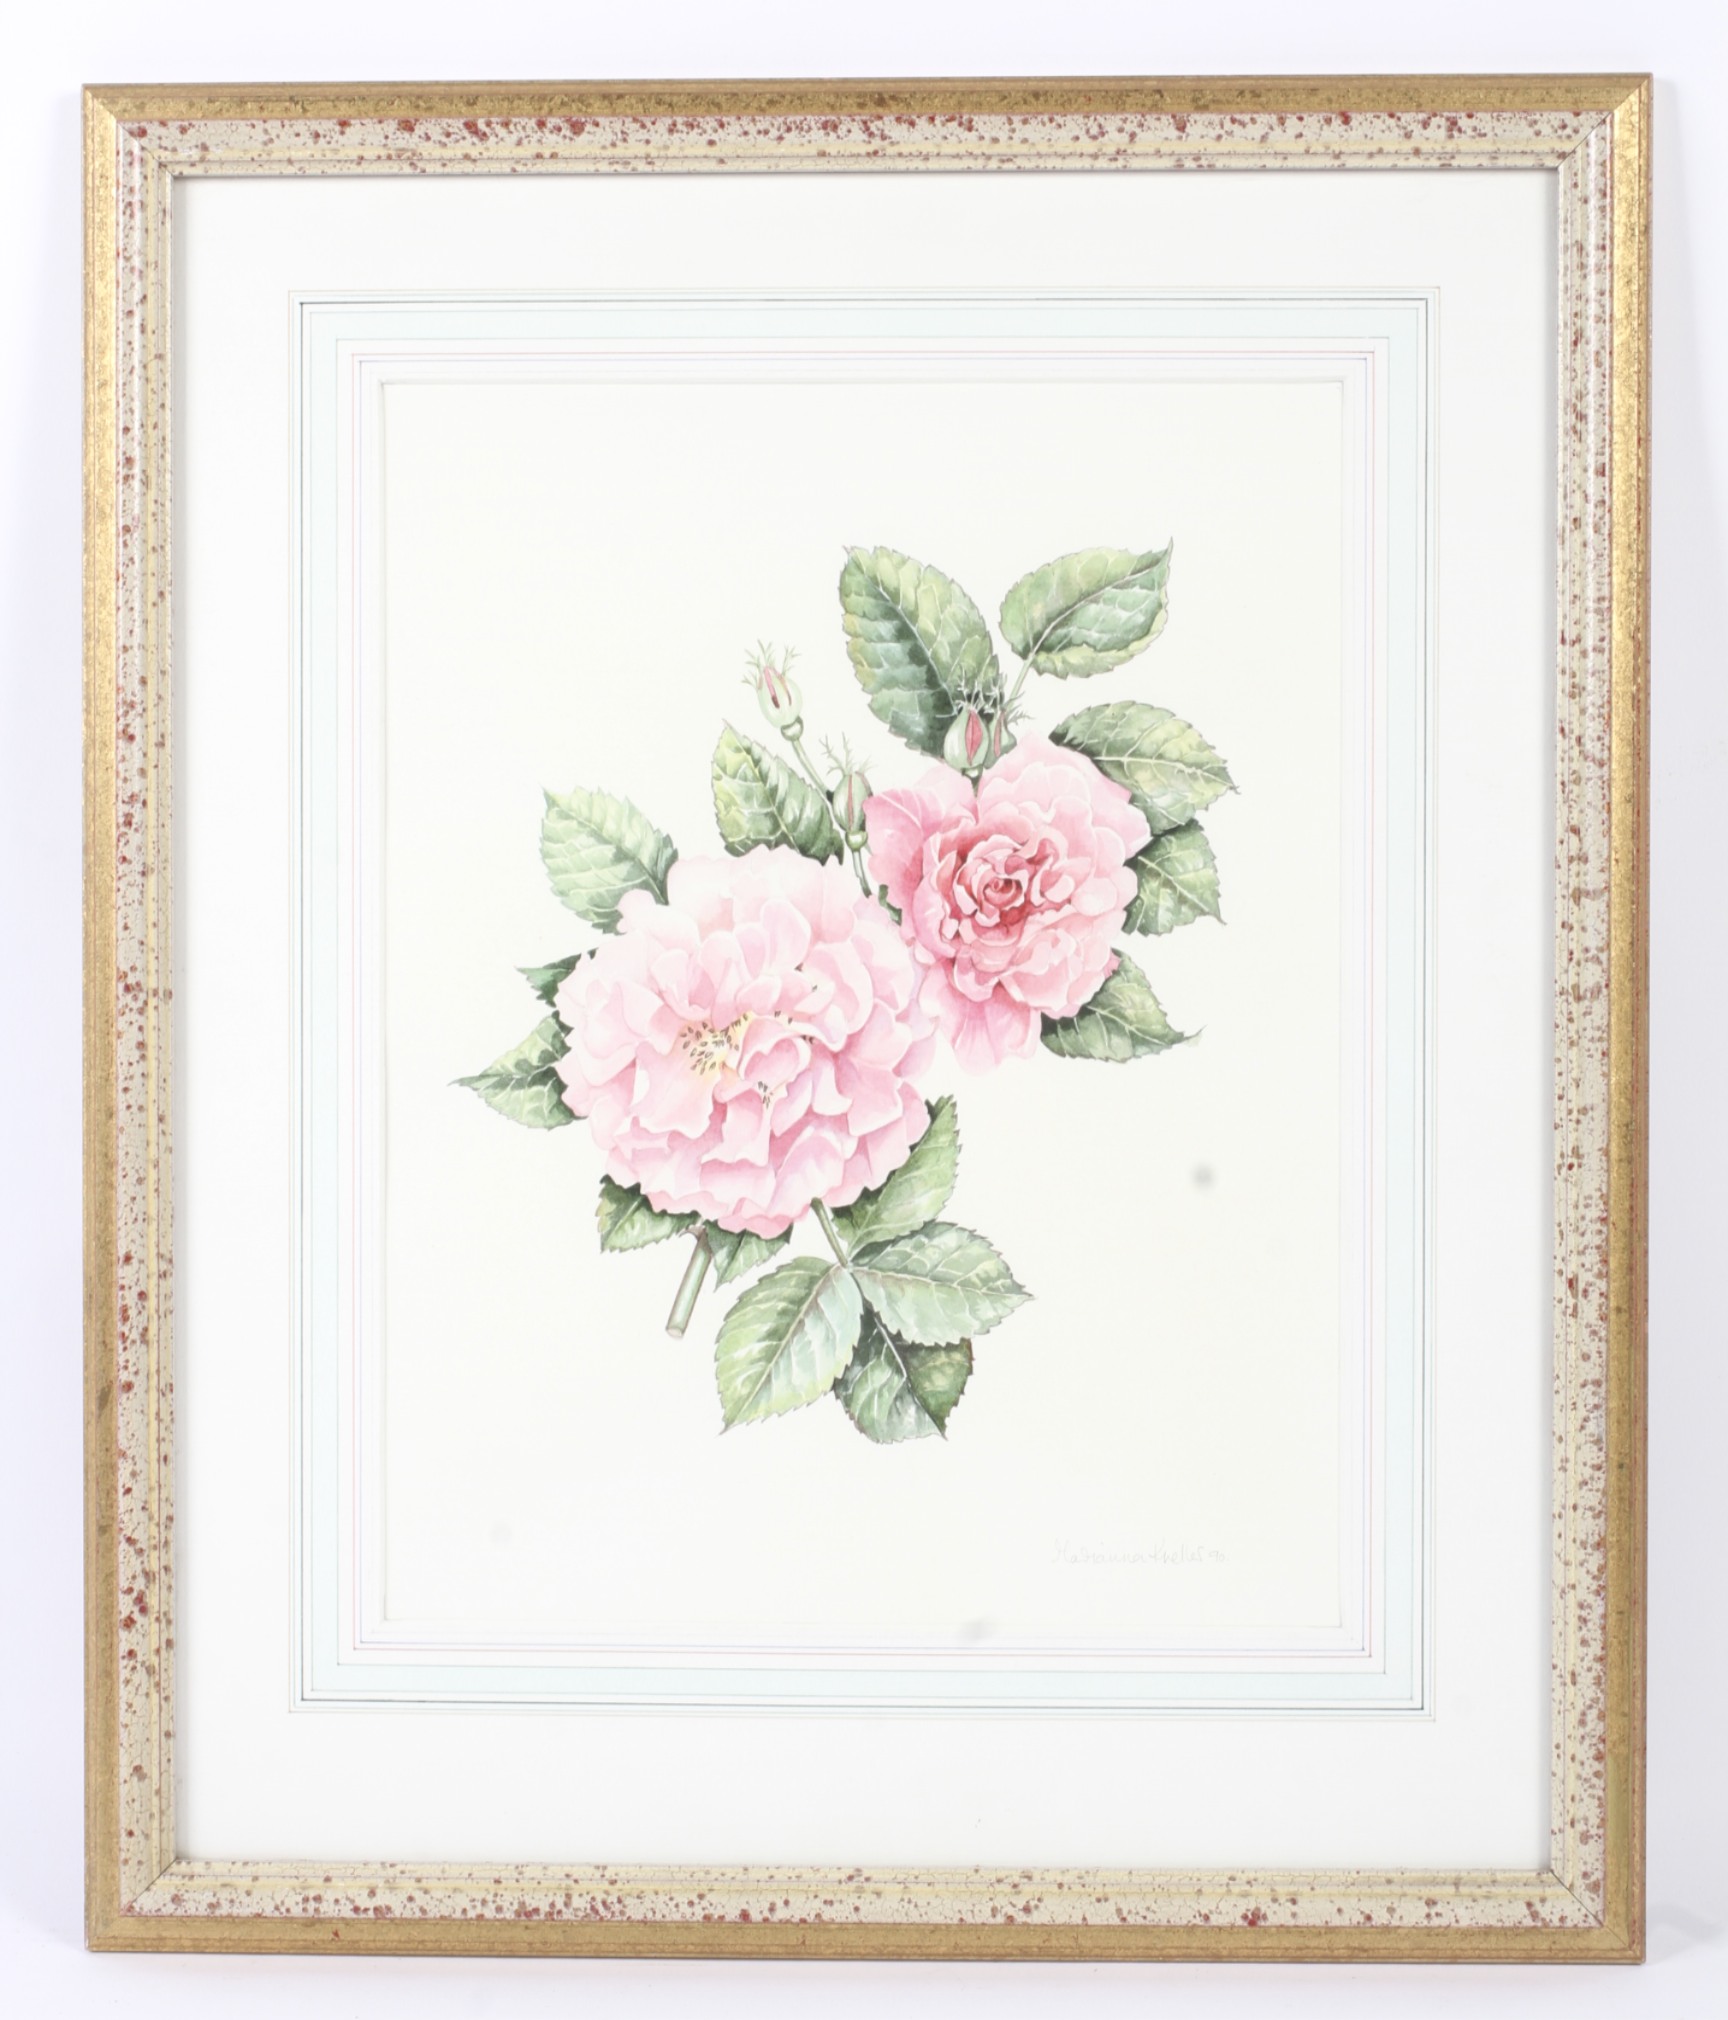 Marianna Kneller, a study of a pink rose